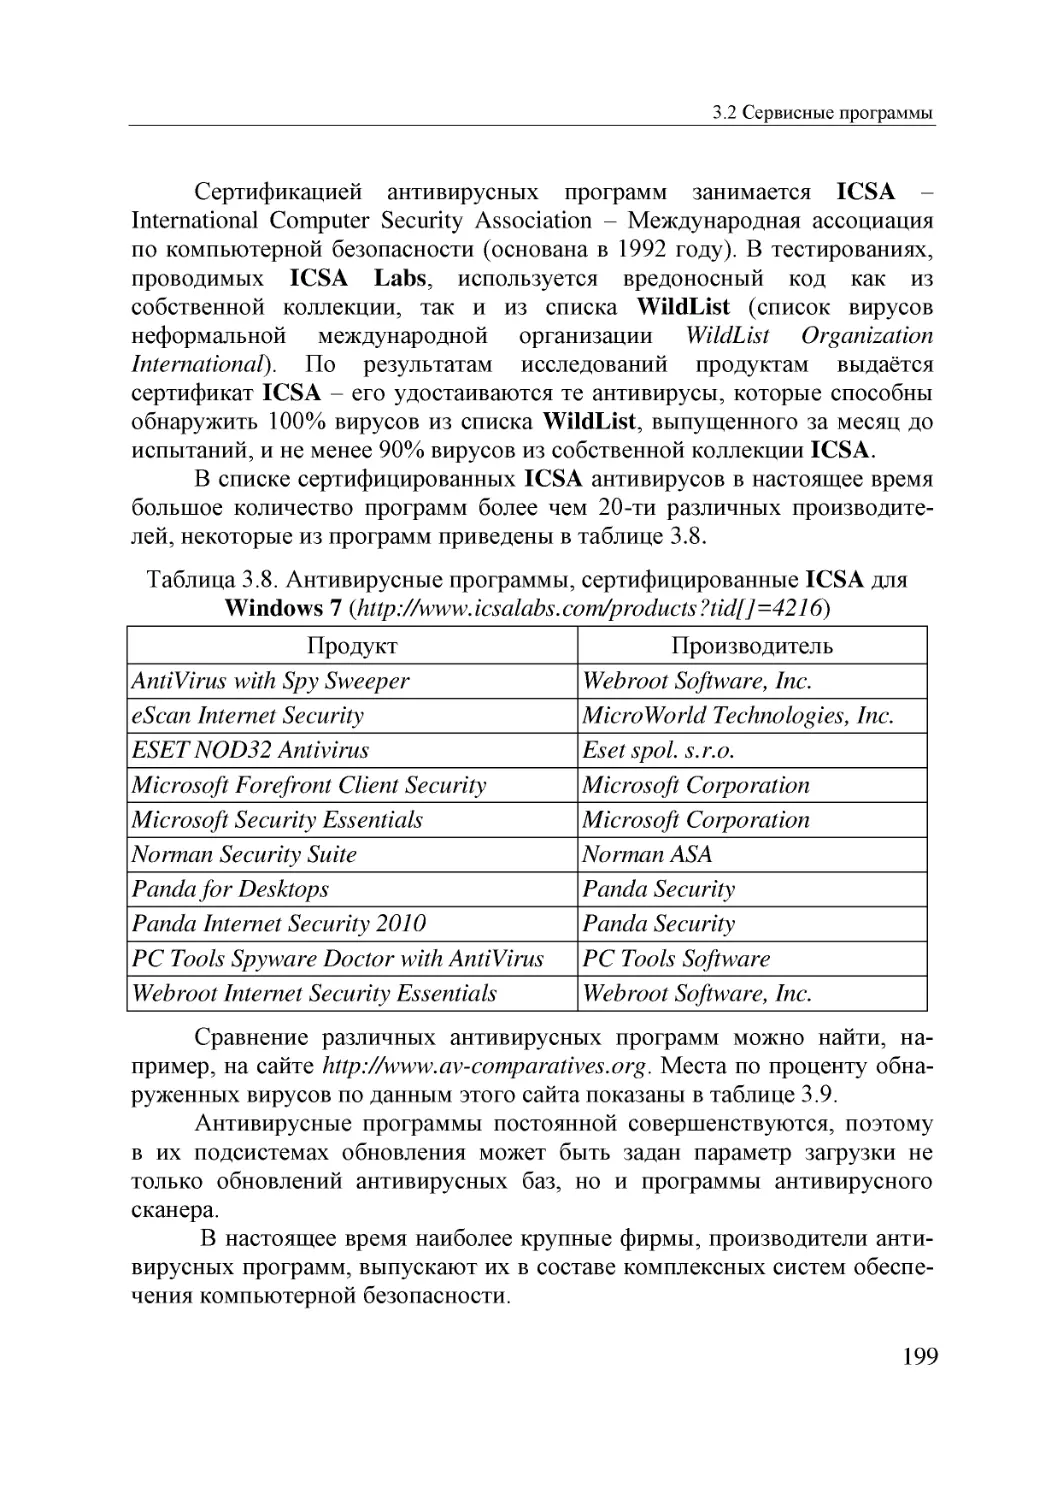 Informatika_Uchebnik_dlya_vuzov_2010 199